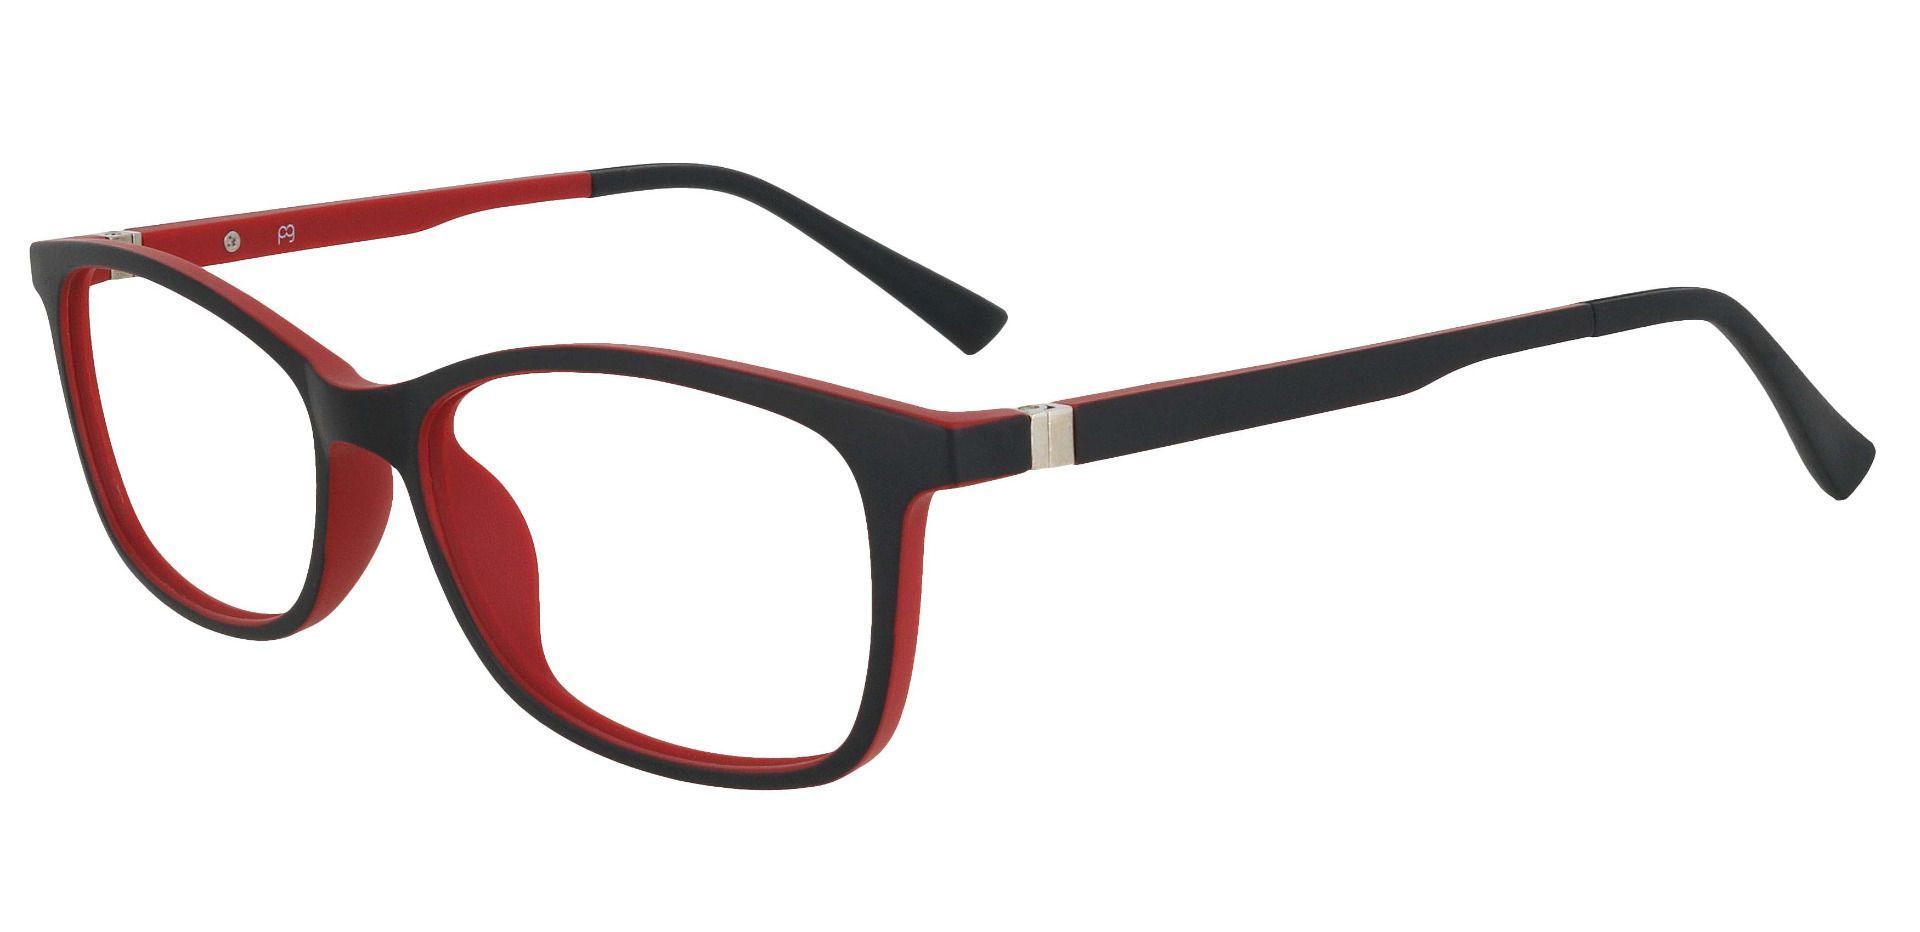 Segura Oval Non-Rx Glasses - Red